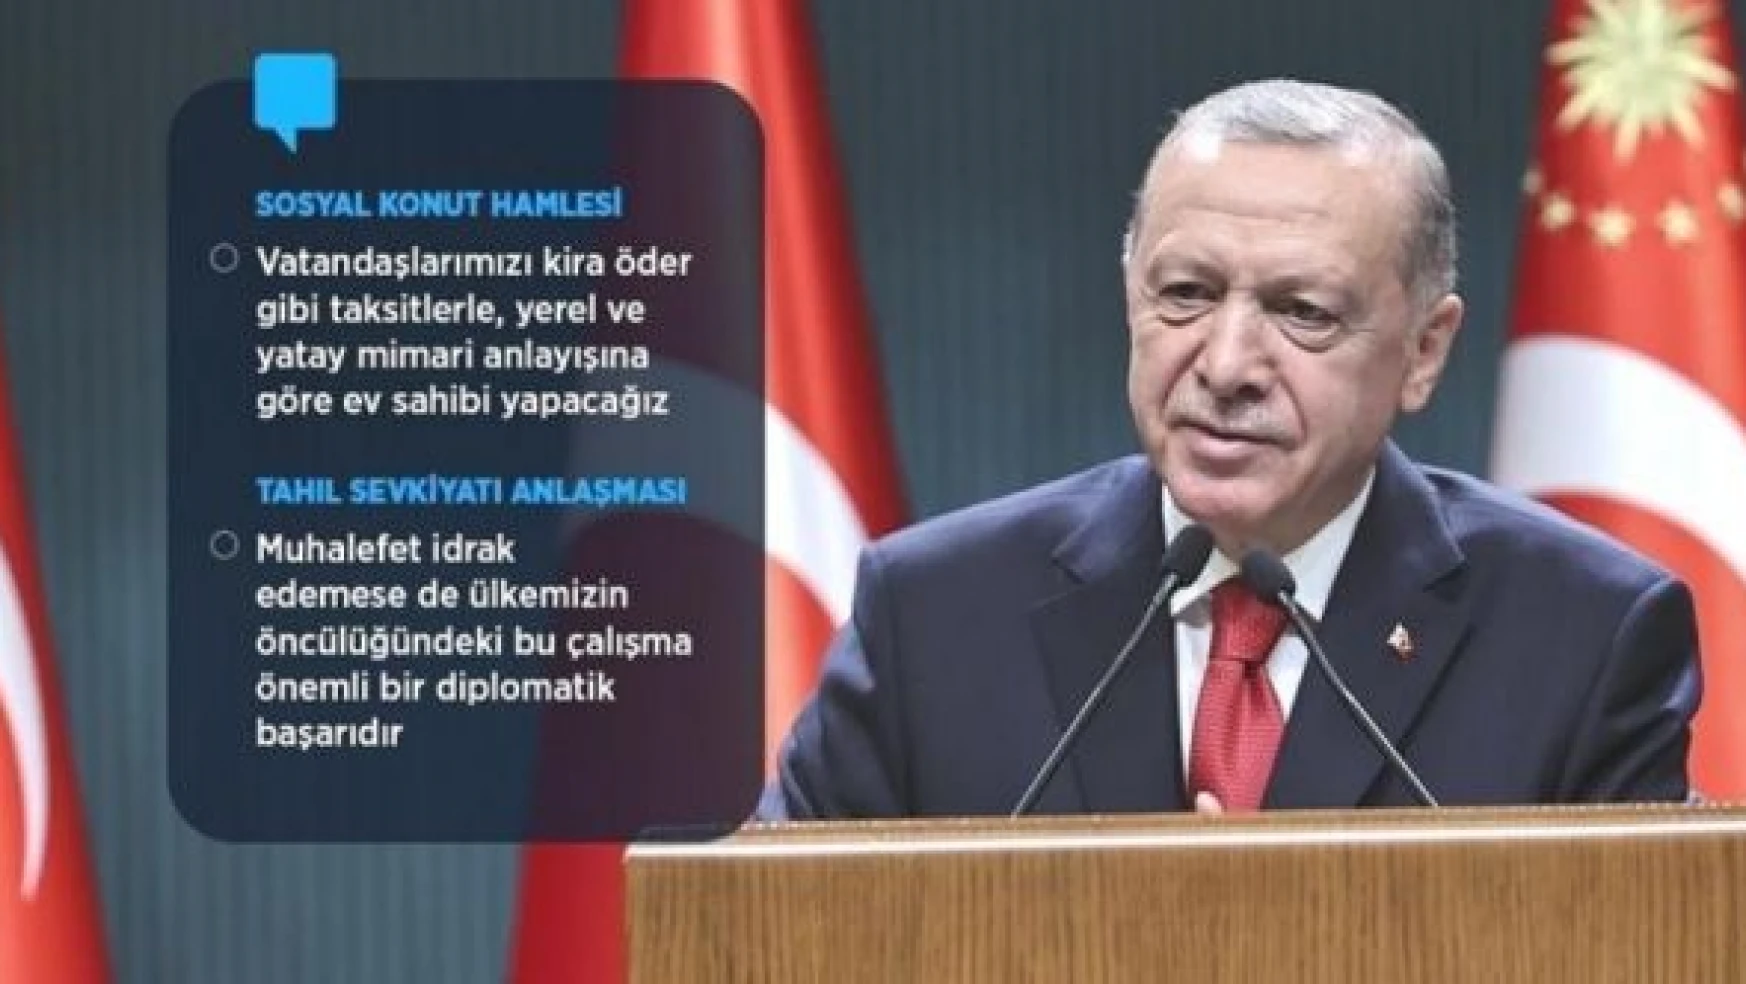 Cumhurbaşkanı Erdoğan: "Sosyal konut hamlesi başlatıyoruz"